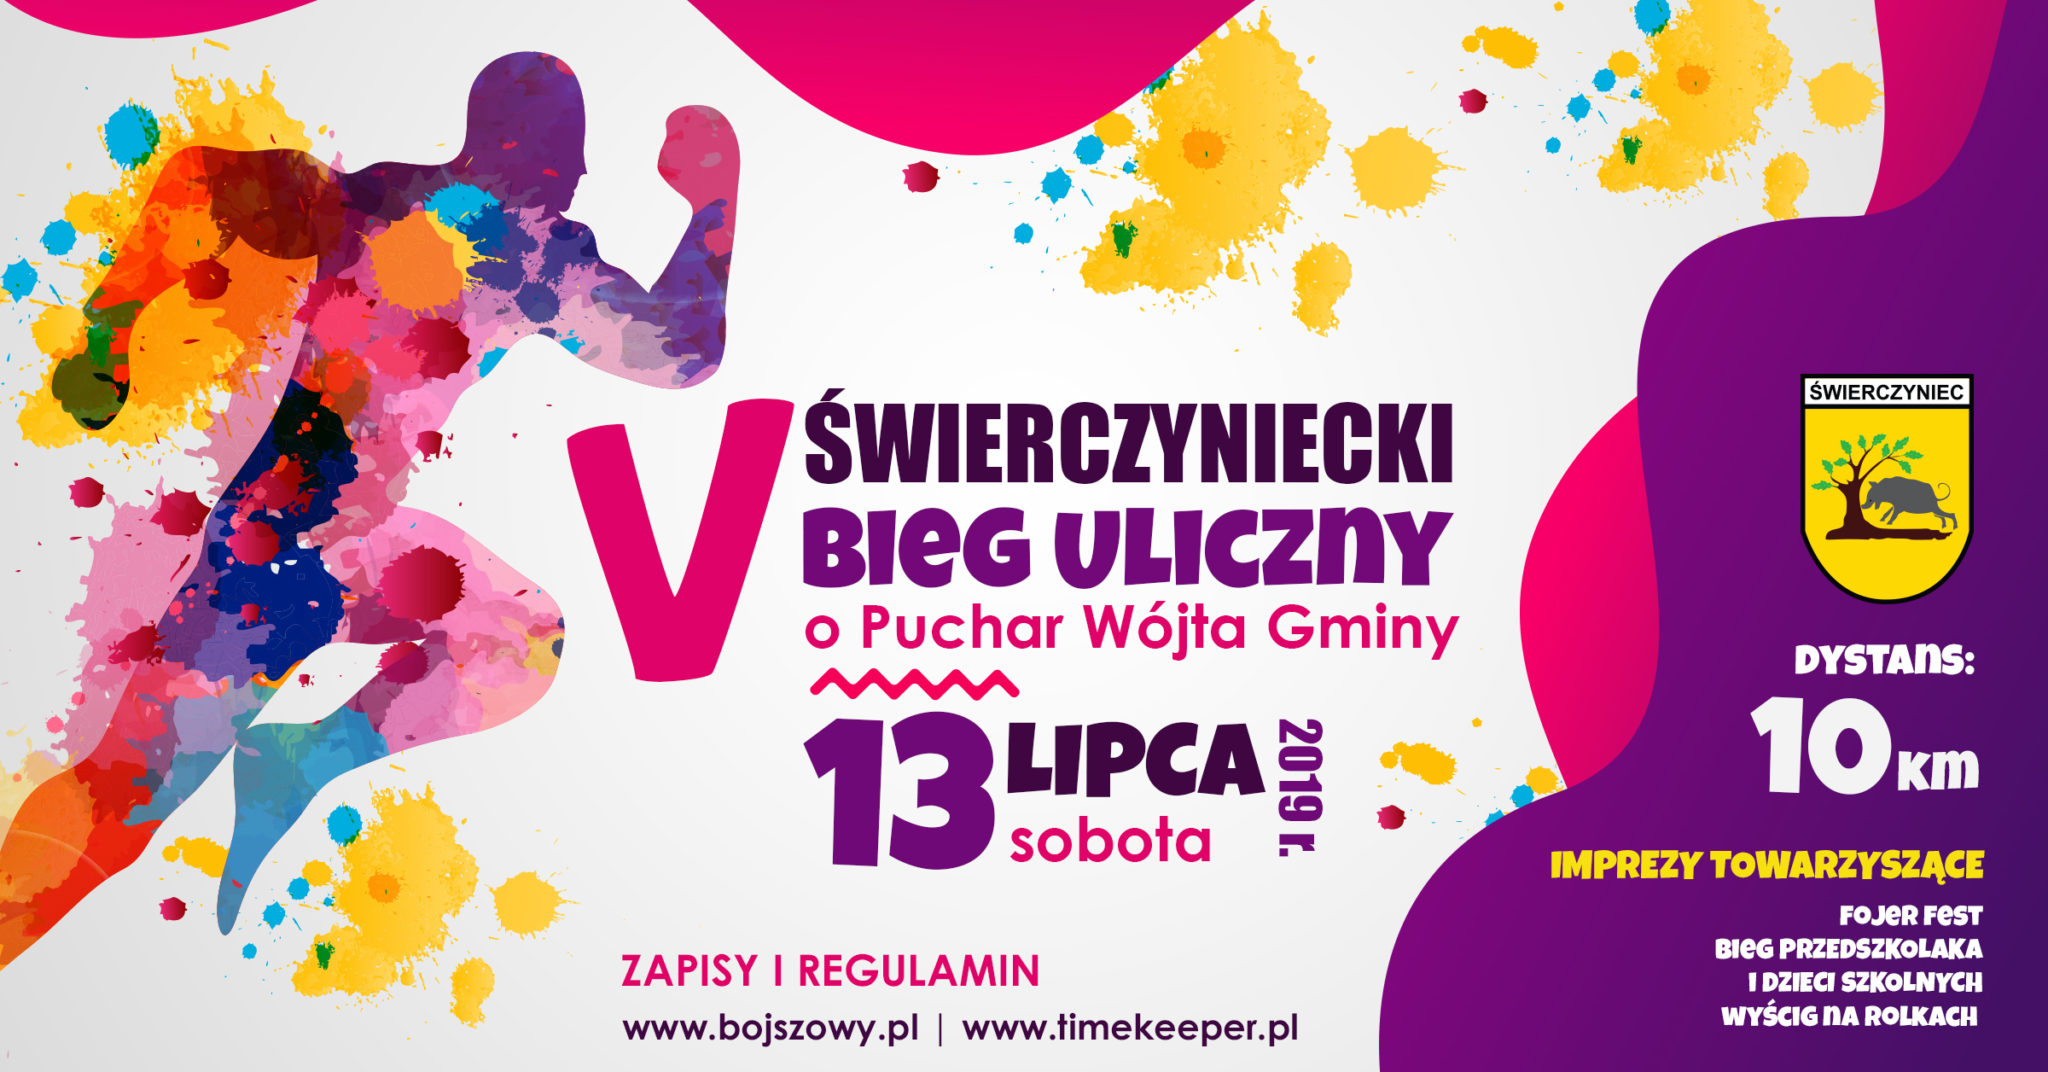 Świerczyniecki Bieg Uliczny 2019 | Aktywer.pl